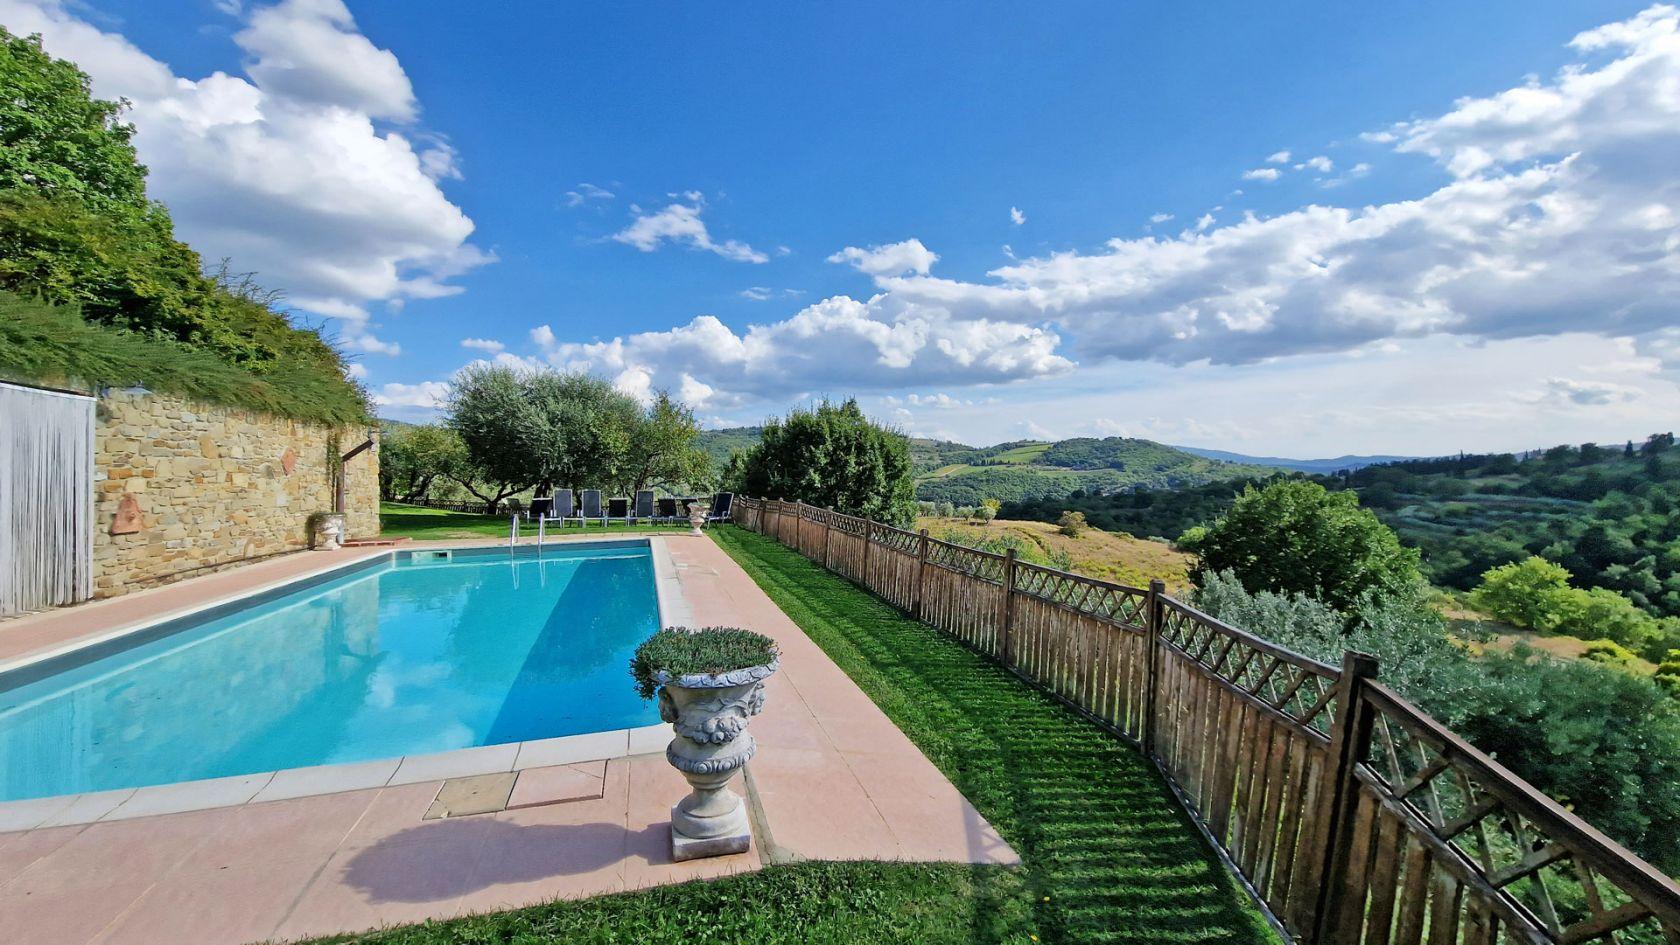 Toscana Immobiliare - Casale con piscina e oliveto in vendita ad Arezzo Toscana